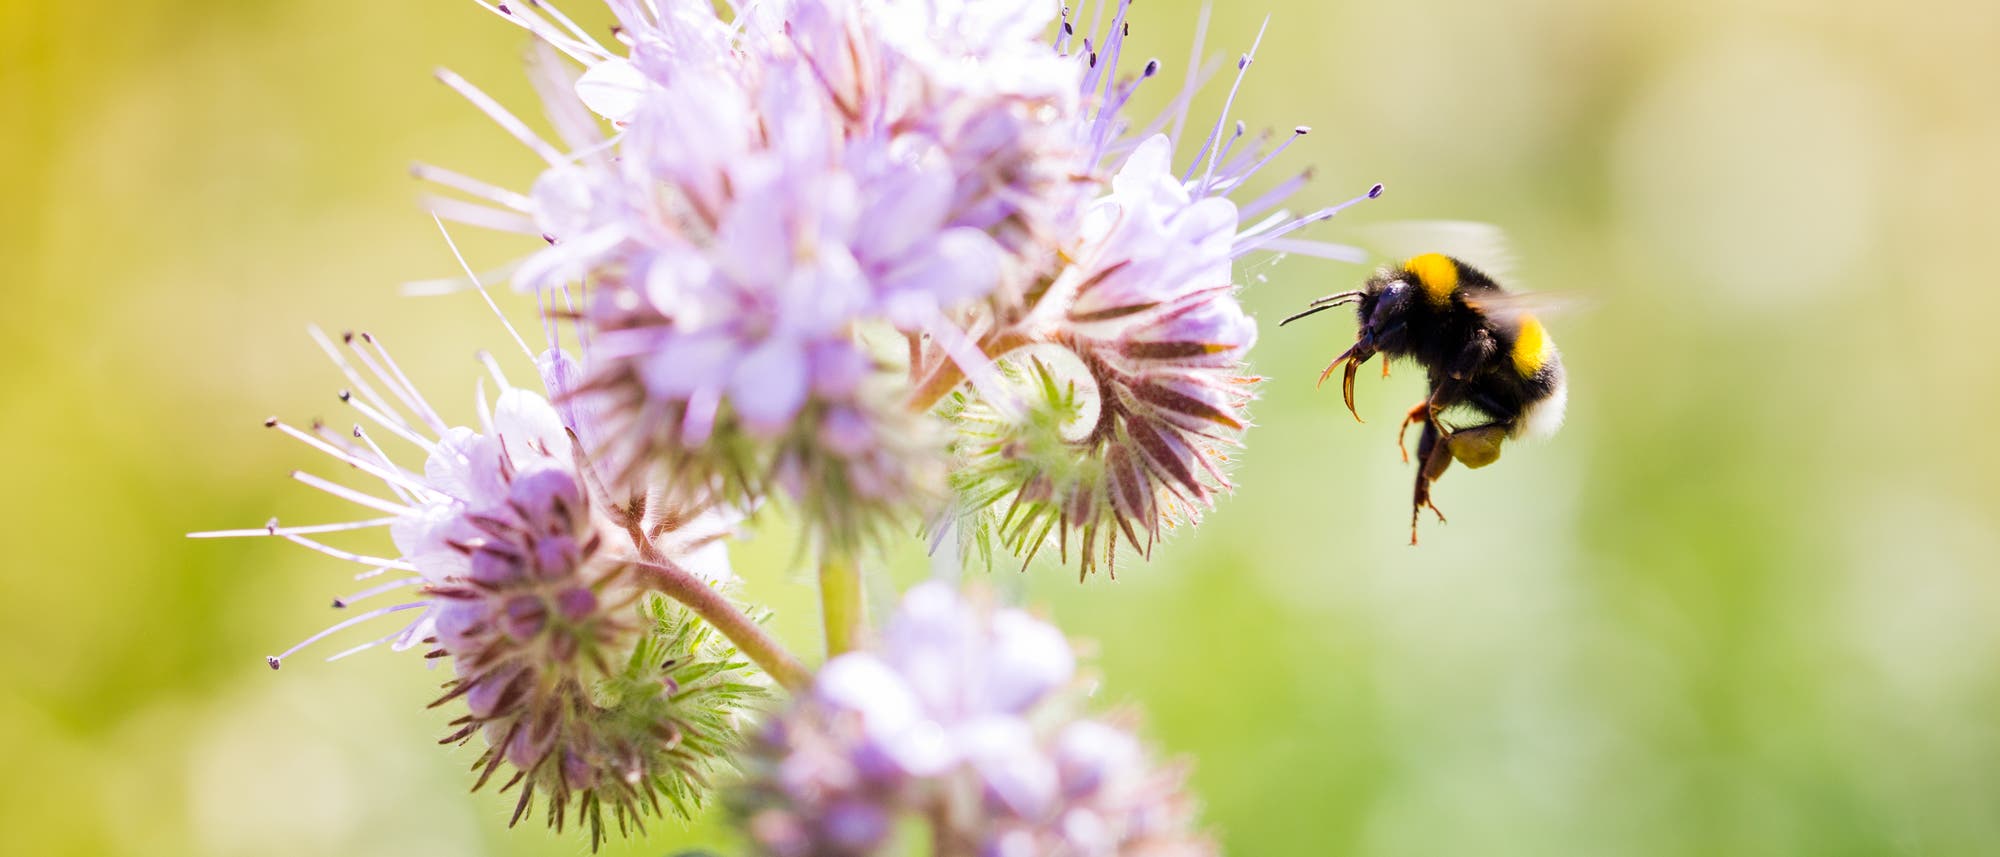 Hummeln zählen zur Gattung der Echten Bienen. Sie sind ausgezeichnete Bestäuber, da sie durch ihre lange Zunge gut in tiefe Blüten gelangen. Wie vielen anderen Insekten macht auch ihnen die Zerstörung ihres Lebensraums zu schaffen. 16 Arten gelten in Deutschland als bedroht.